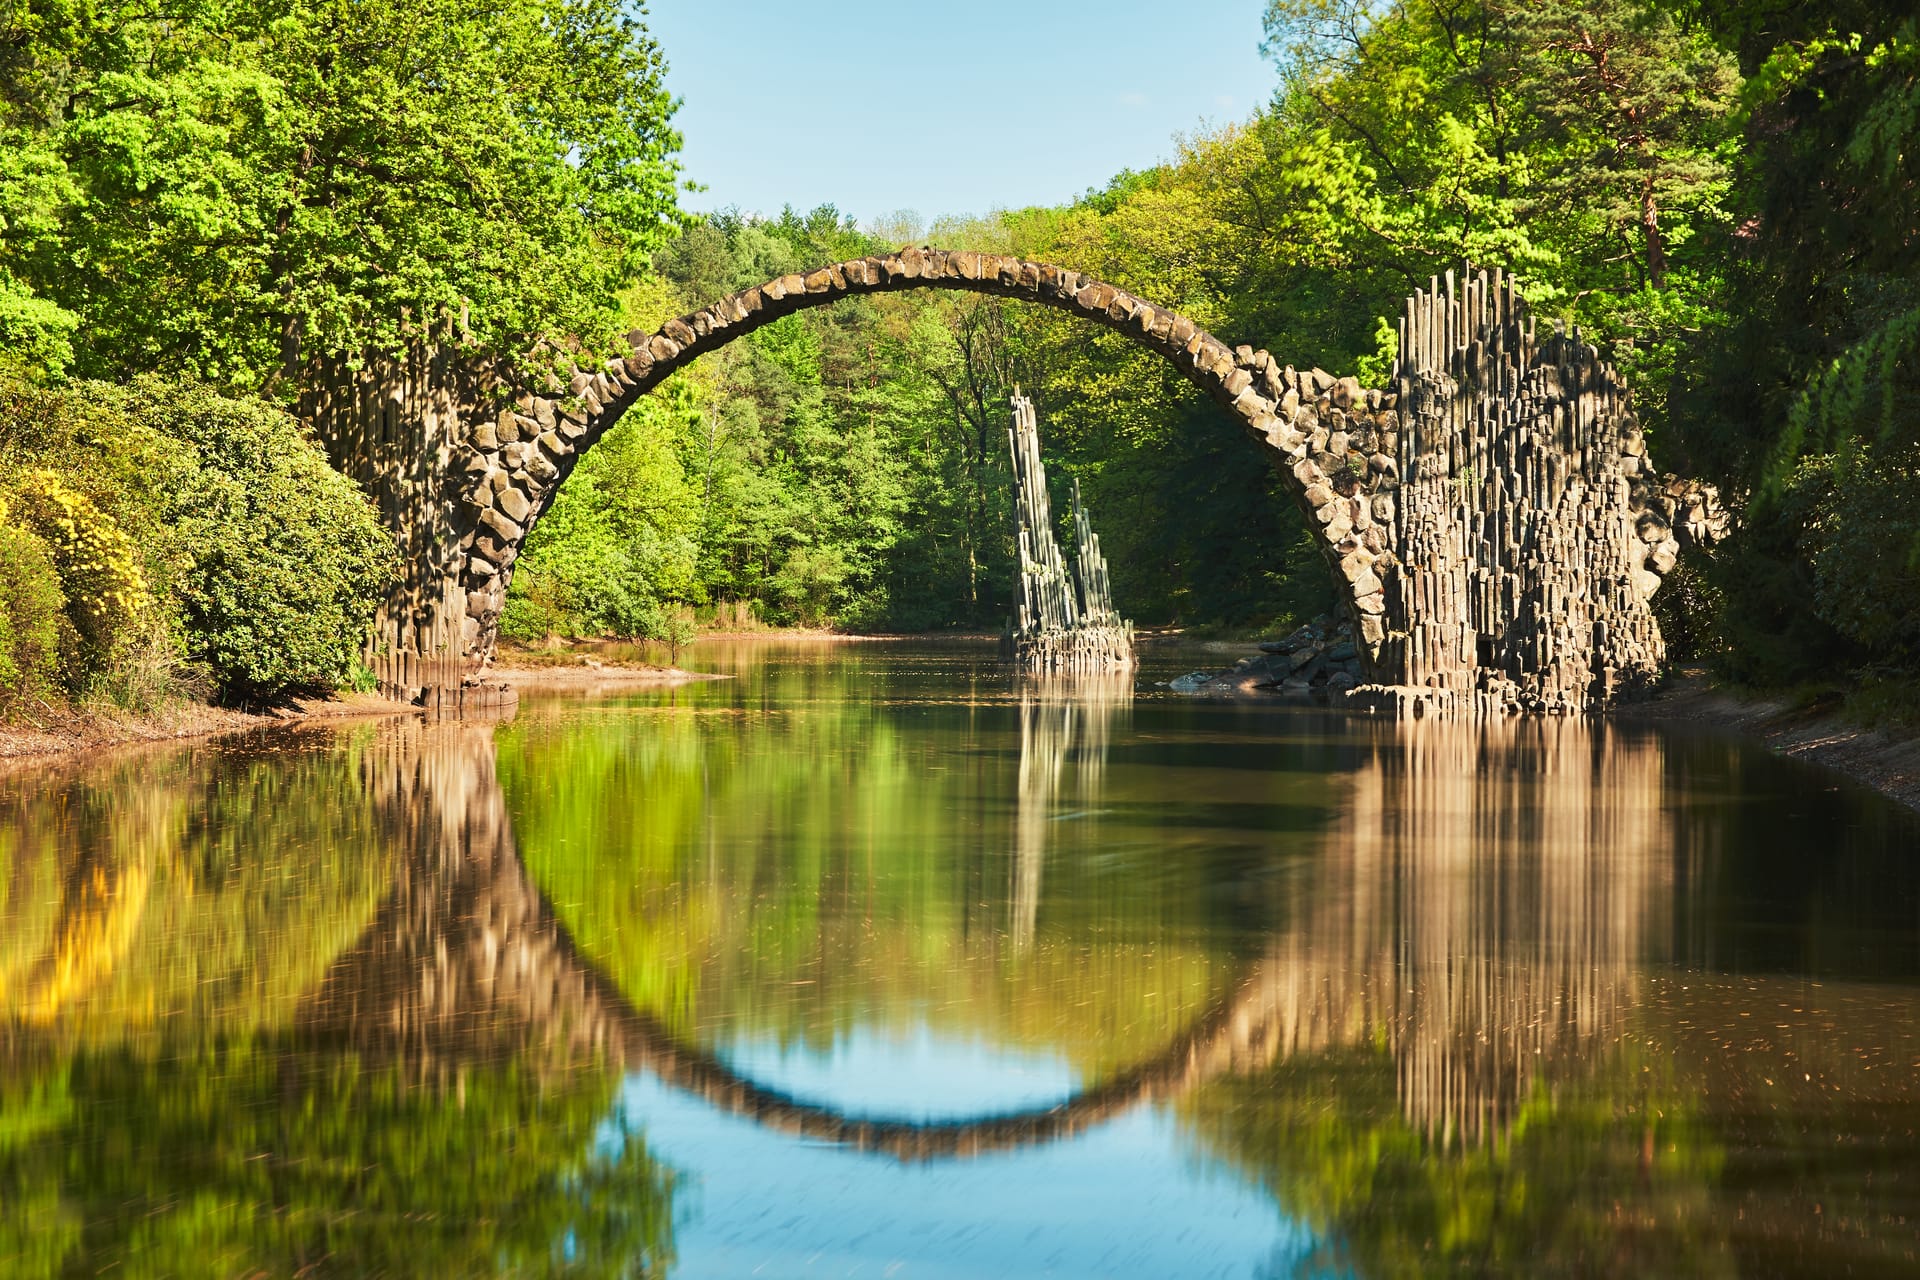 Rakotzbrücke: Was die Brücke so besonders macht, ist ihre Spiegelung im Wasser.